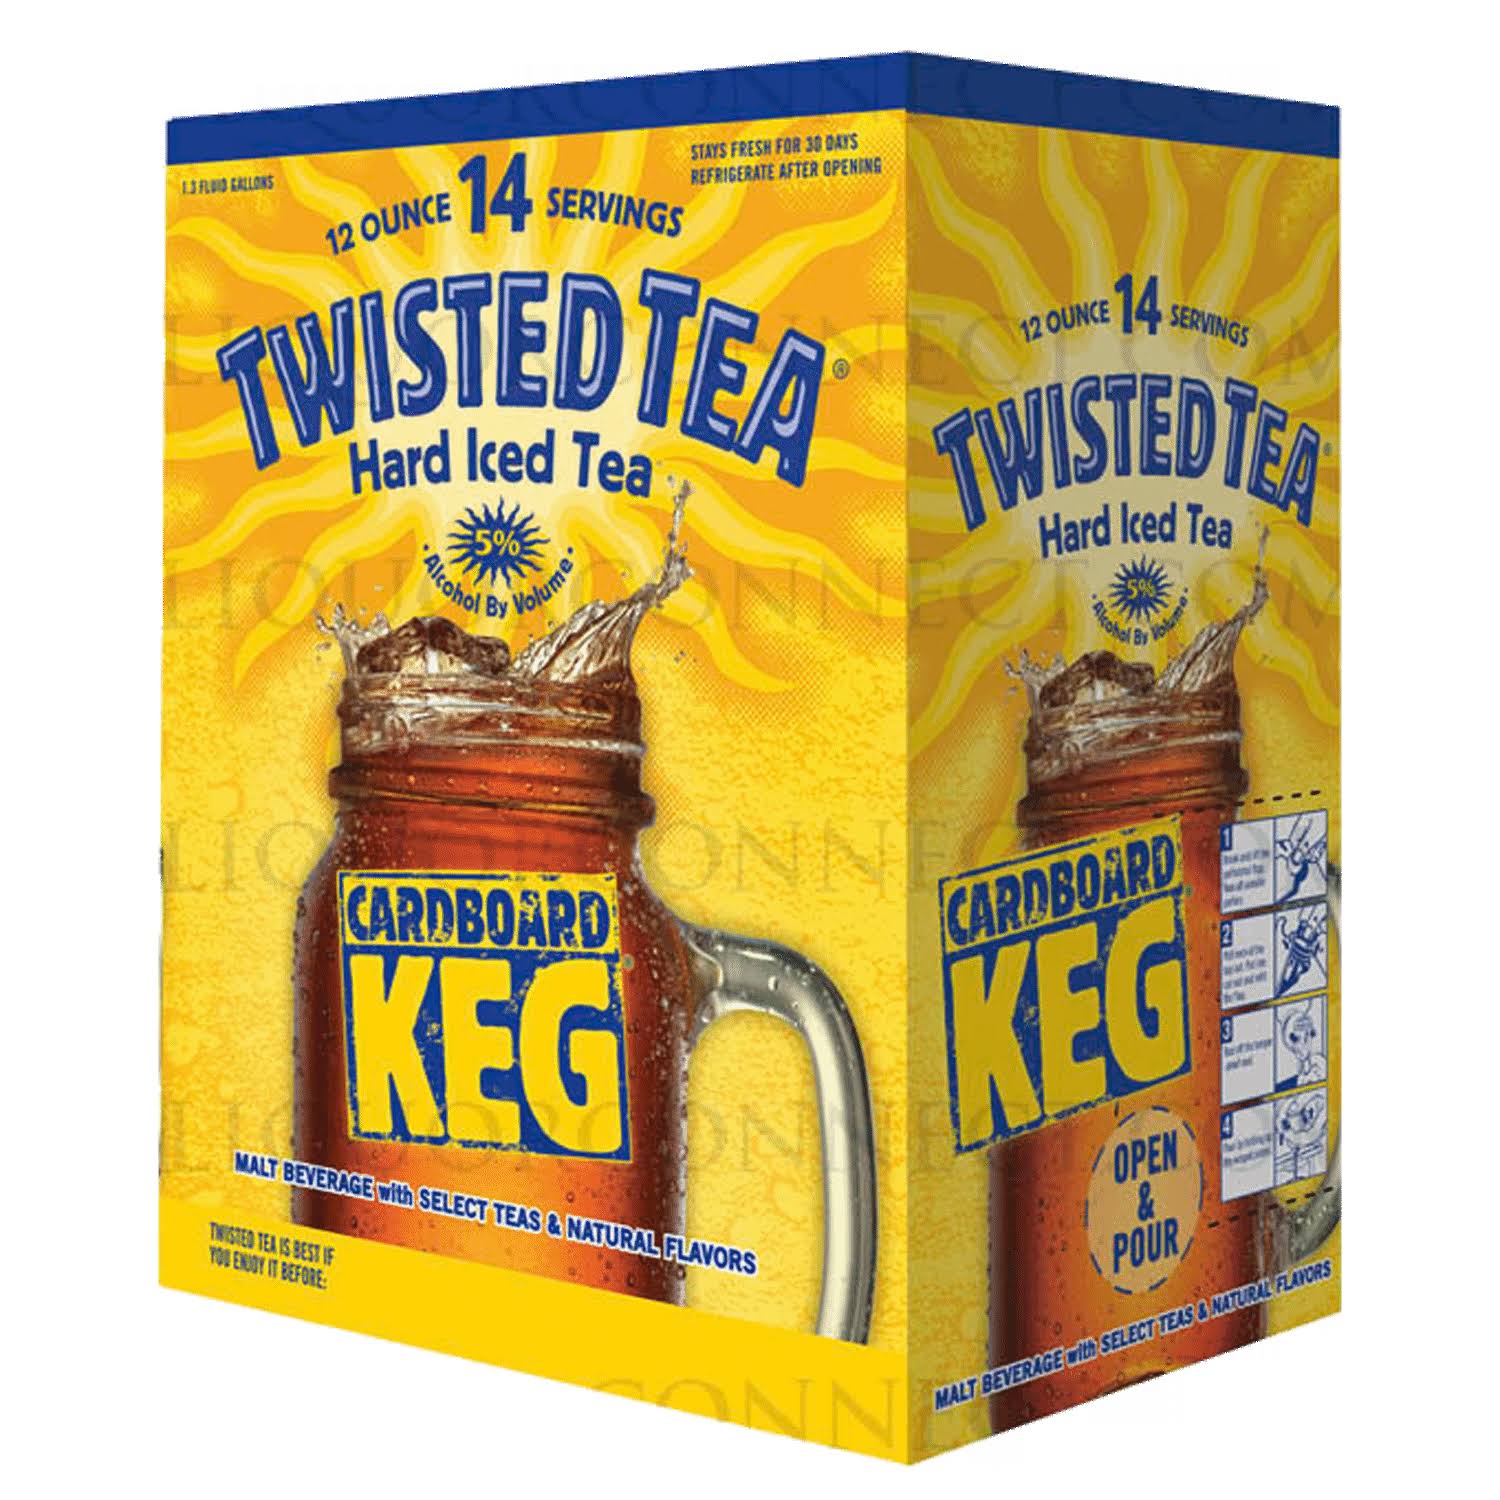 Twisted Tea Hard Iced Tea - 12oz, 14 Servings